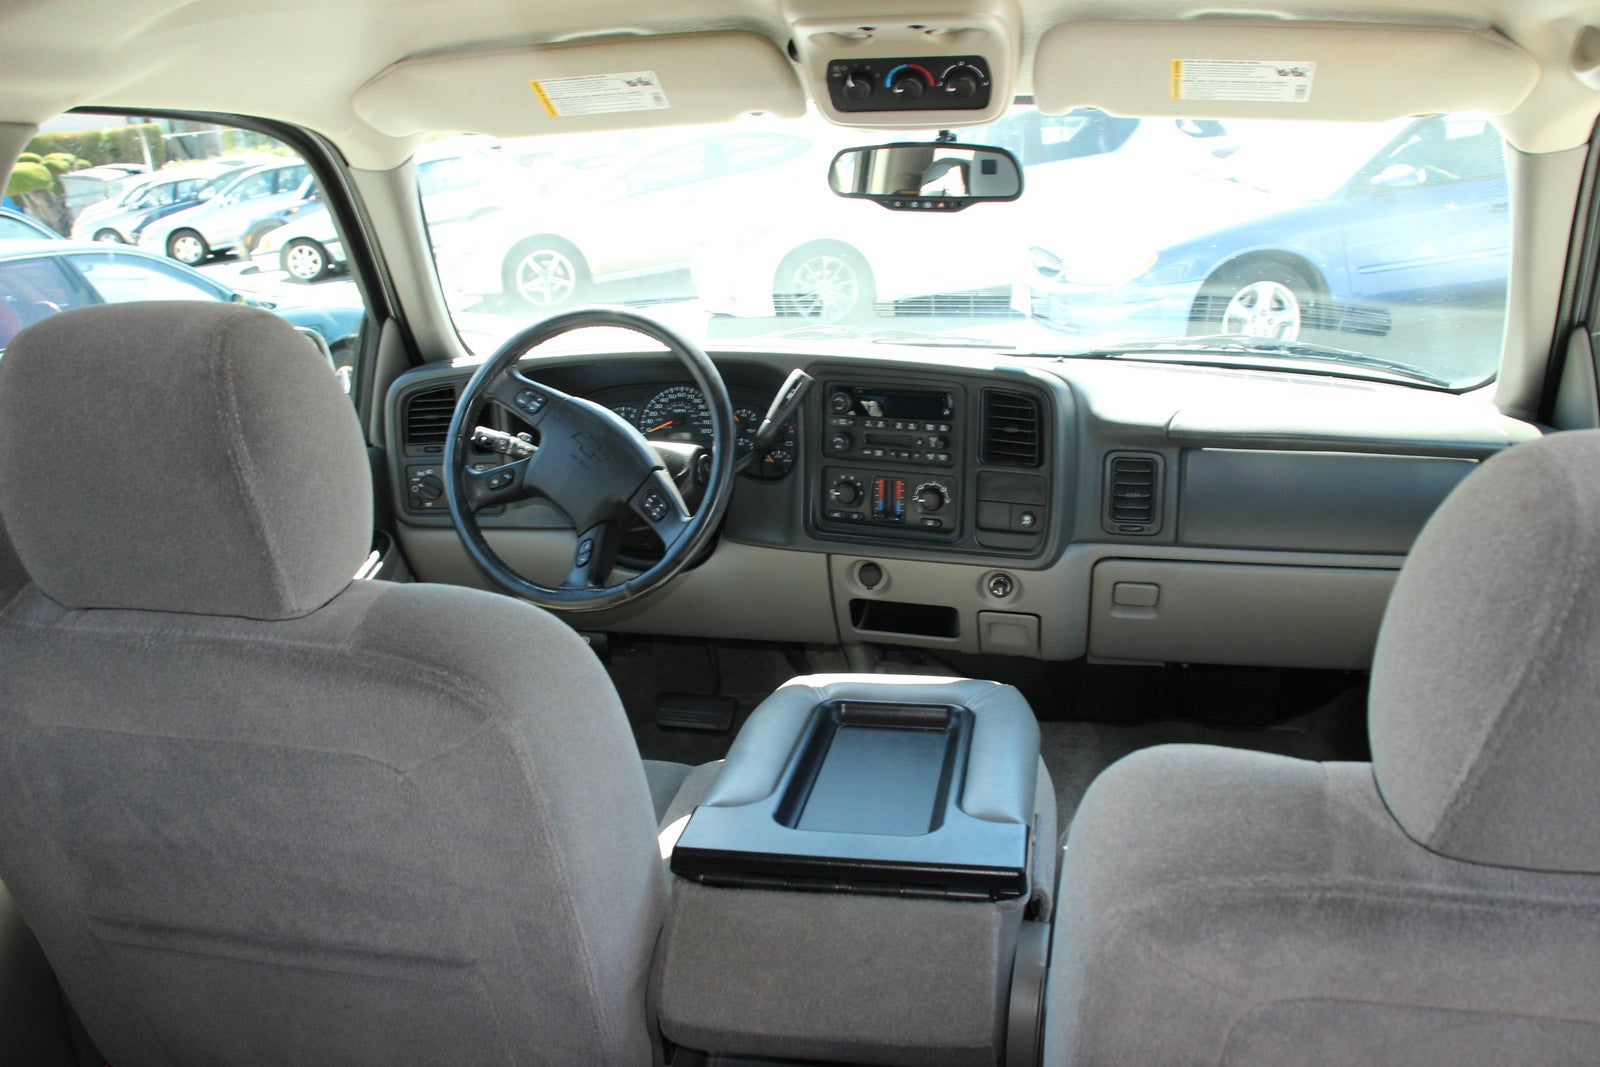 2005 Chevrolet Tahoe - Pictures - CarGurus